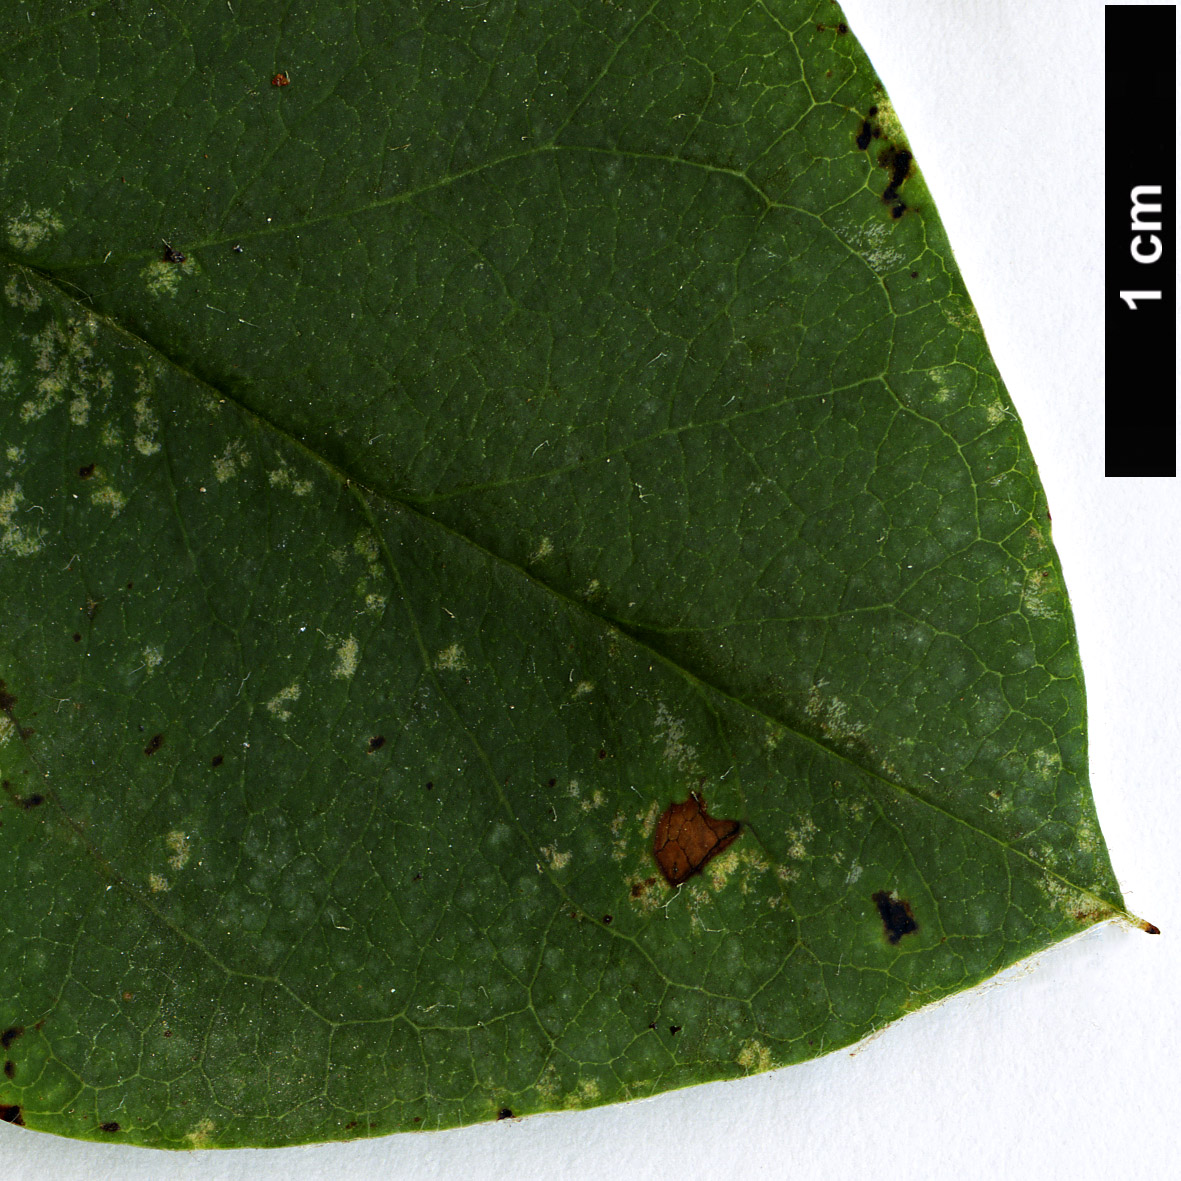 High resolution image: Family: Rosaceae - Genus: Cotoneaster - Taxon: albokermesinus